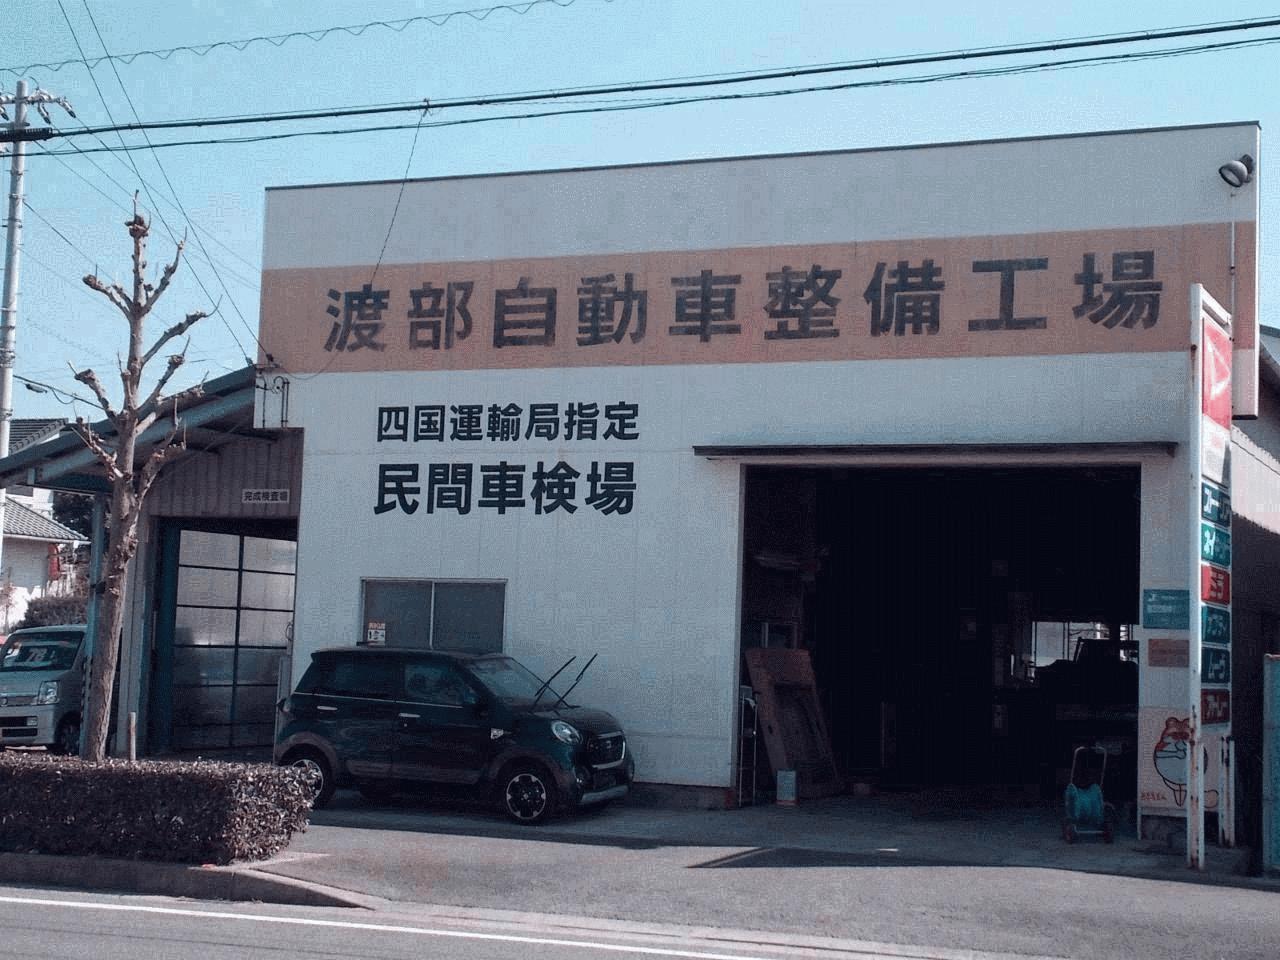 渡部自動車整備工場 愛媛県西条市 Mjnetディーラー お店の情報